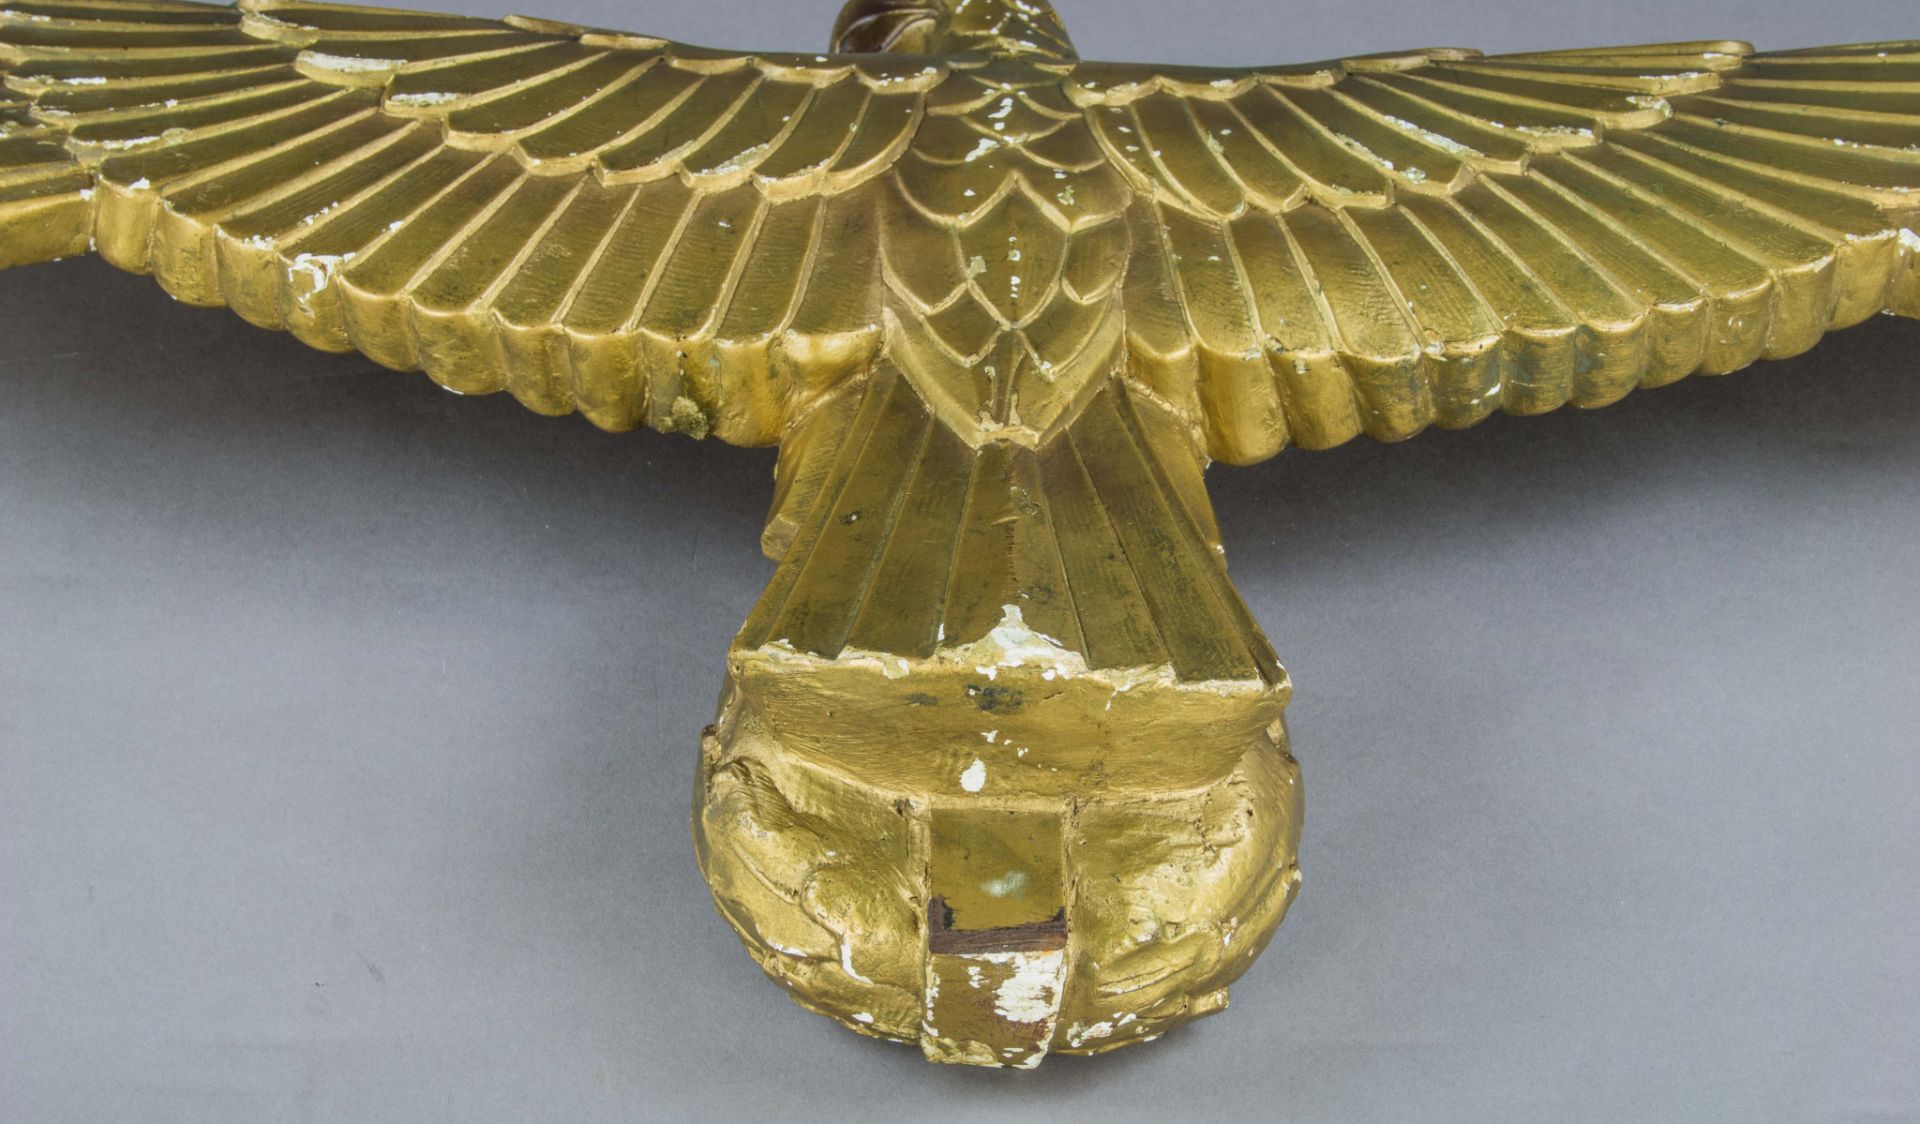 THE GOLDEN EAGLE FROM ADOLF HITLER'S REICHSCHANCELLERY BEDROOM - Bild 8 aus 13